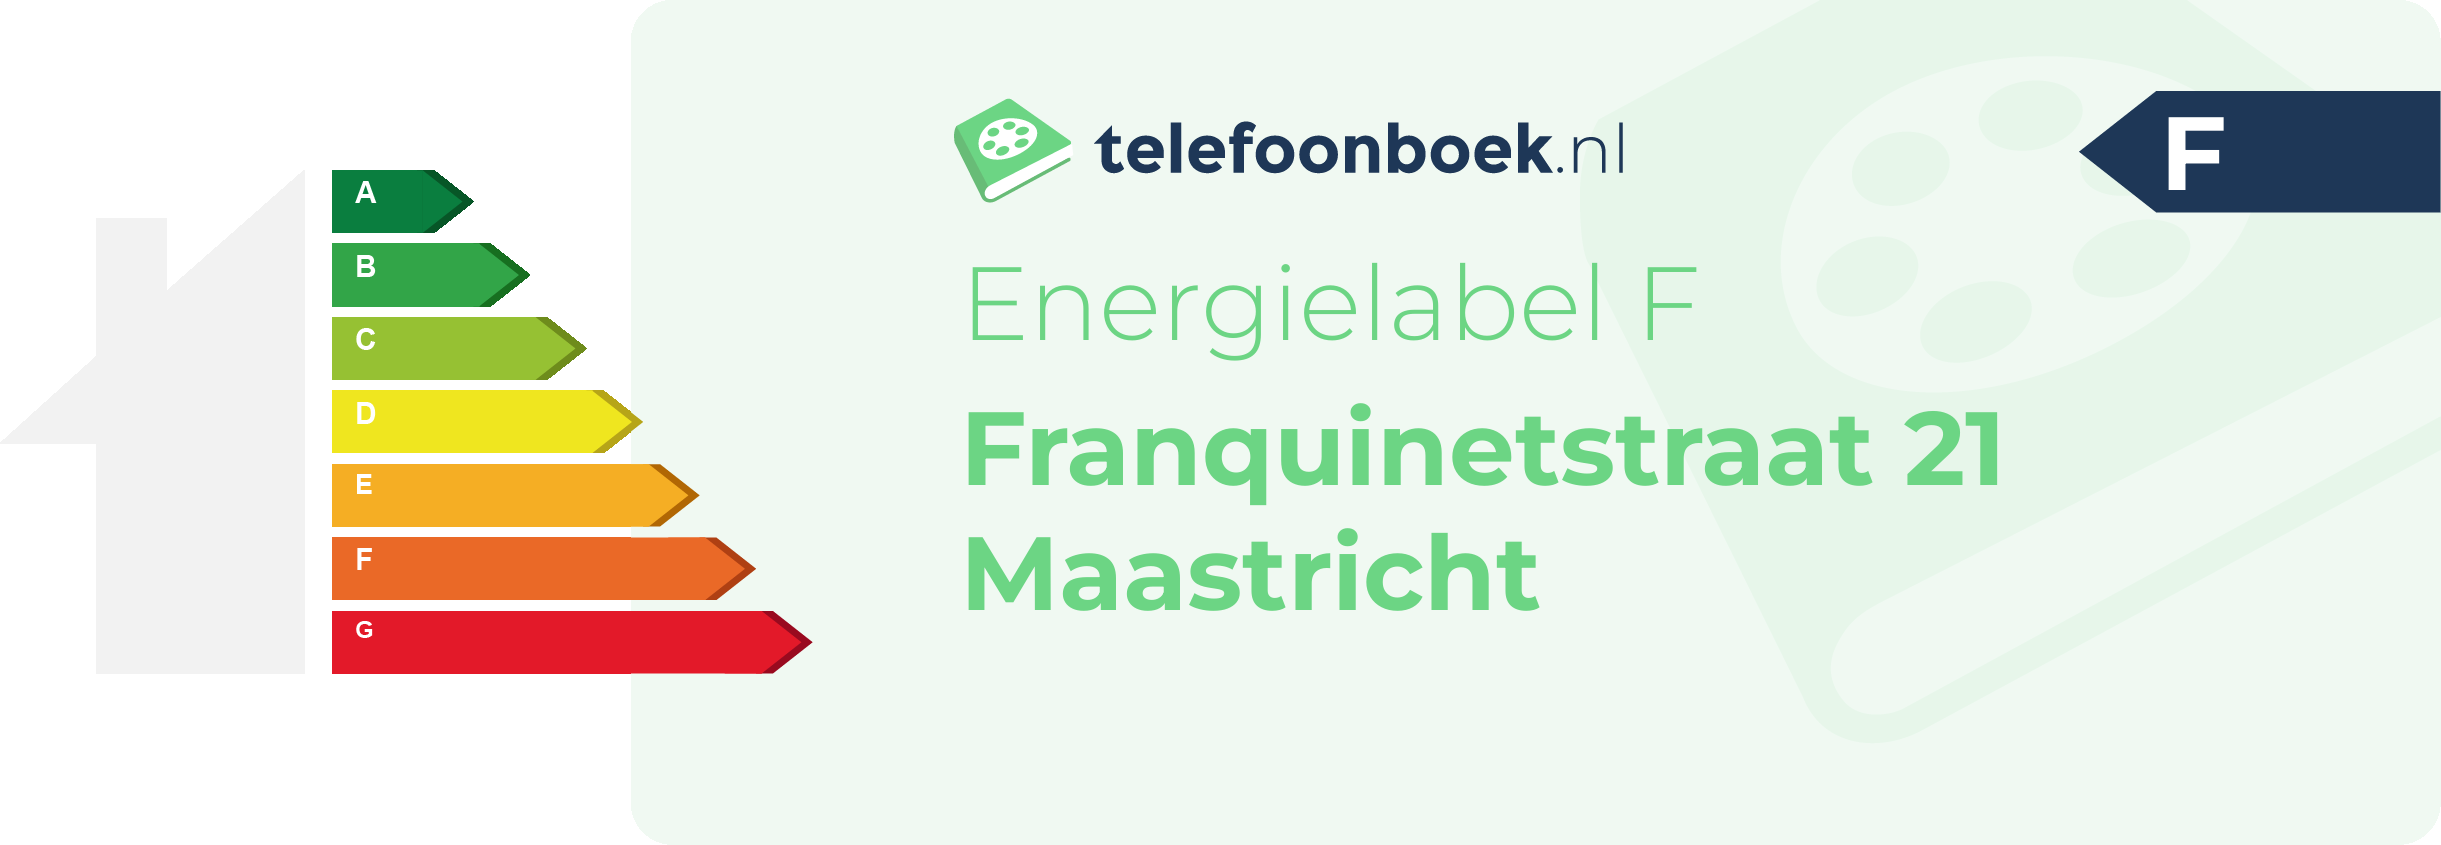 Energielabel Franquinetstraat 21 Maastricht